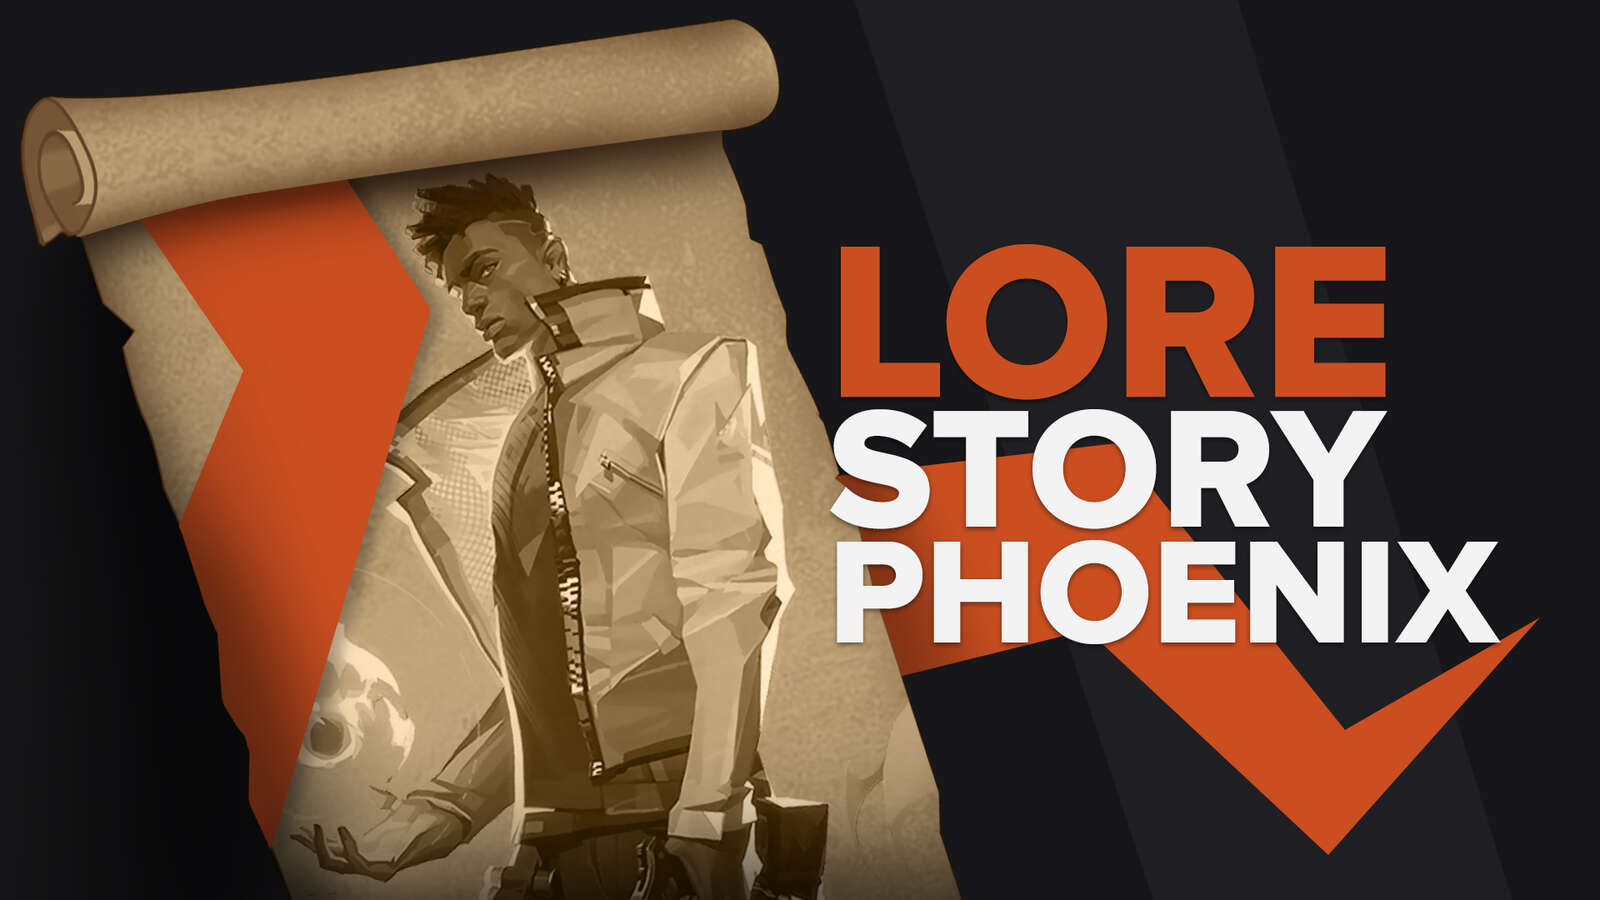 Valorant Lore Story Phoenix Explained